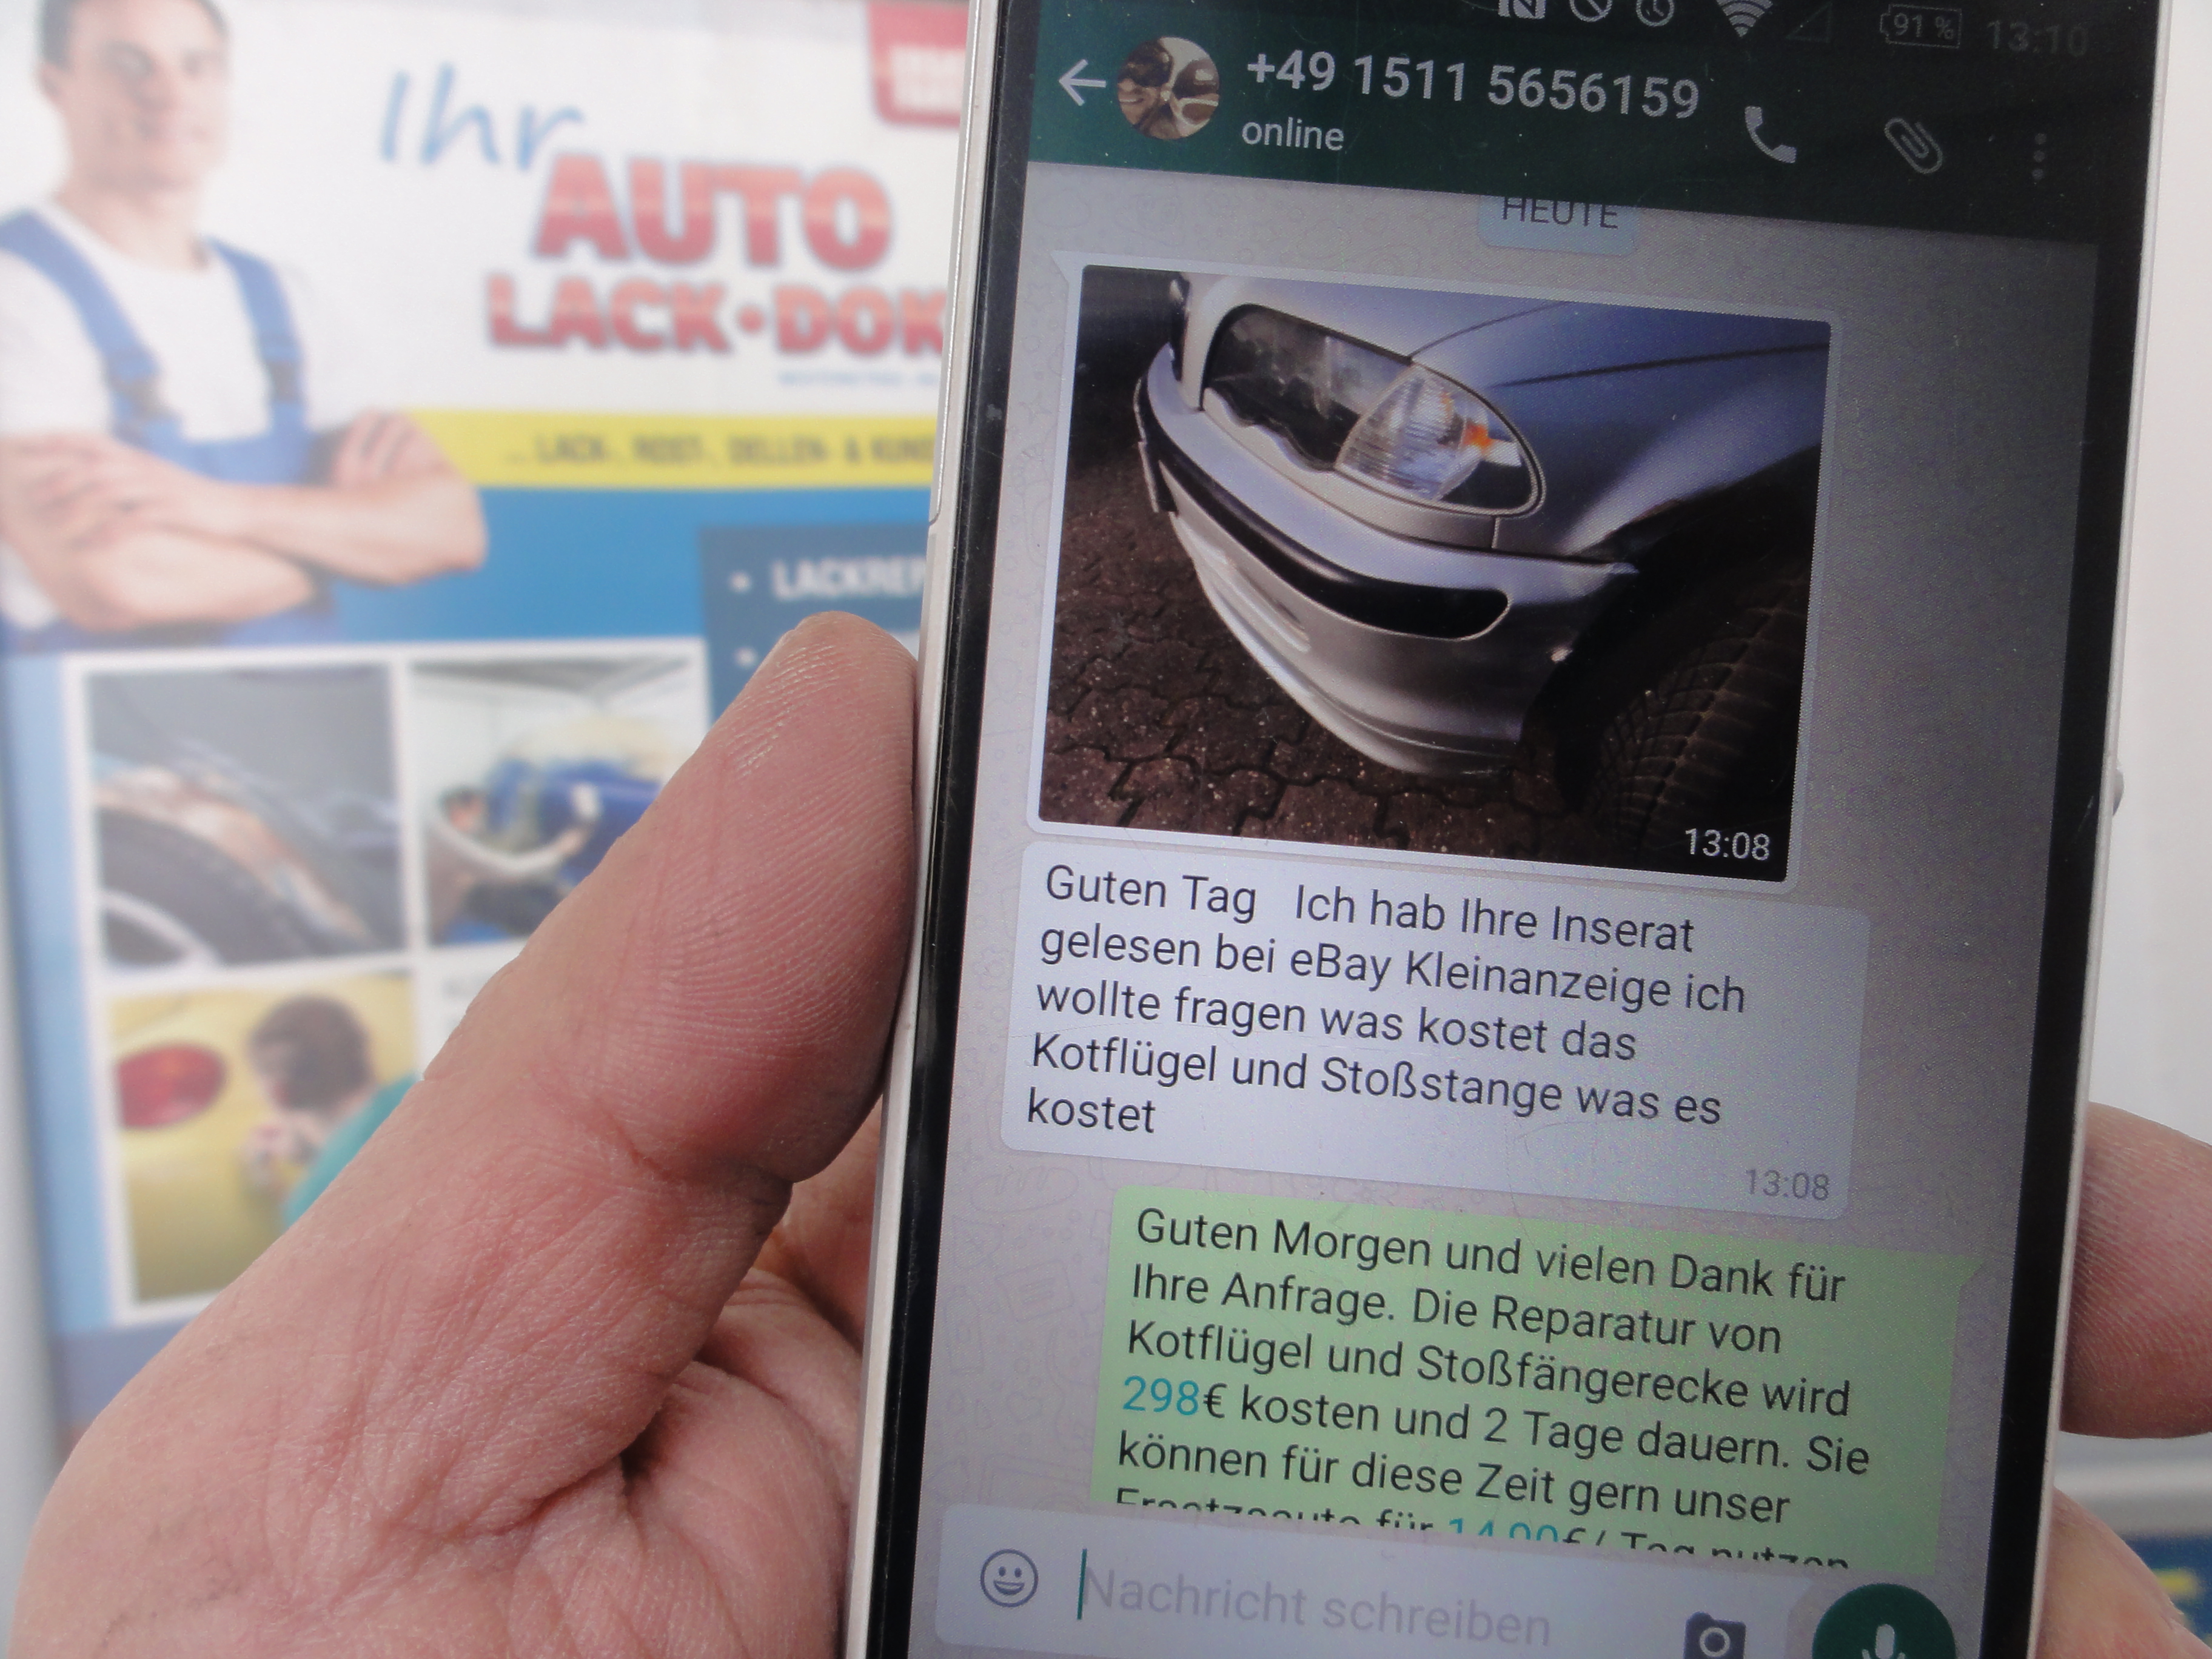 Angebote gibts auch per Whatsapp von Ihrem Auto-Lack-Doktor in Koitzsch.